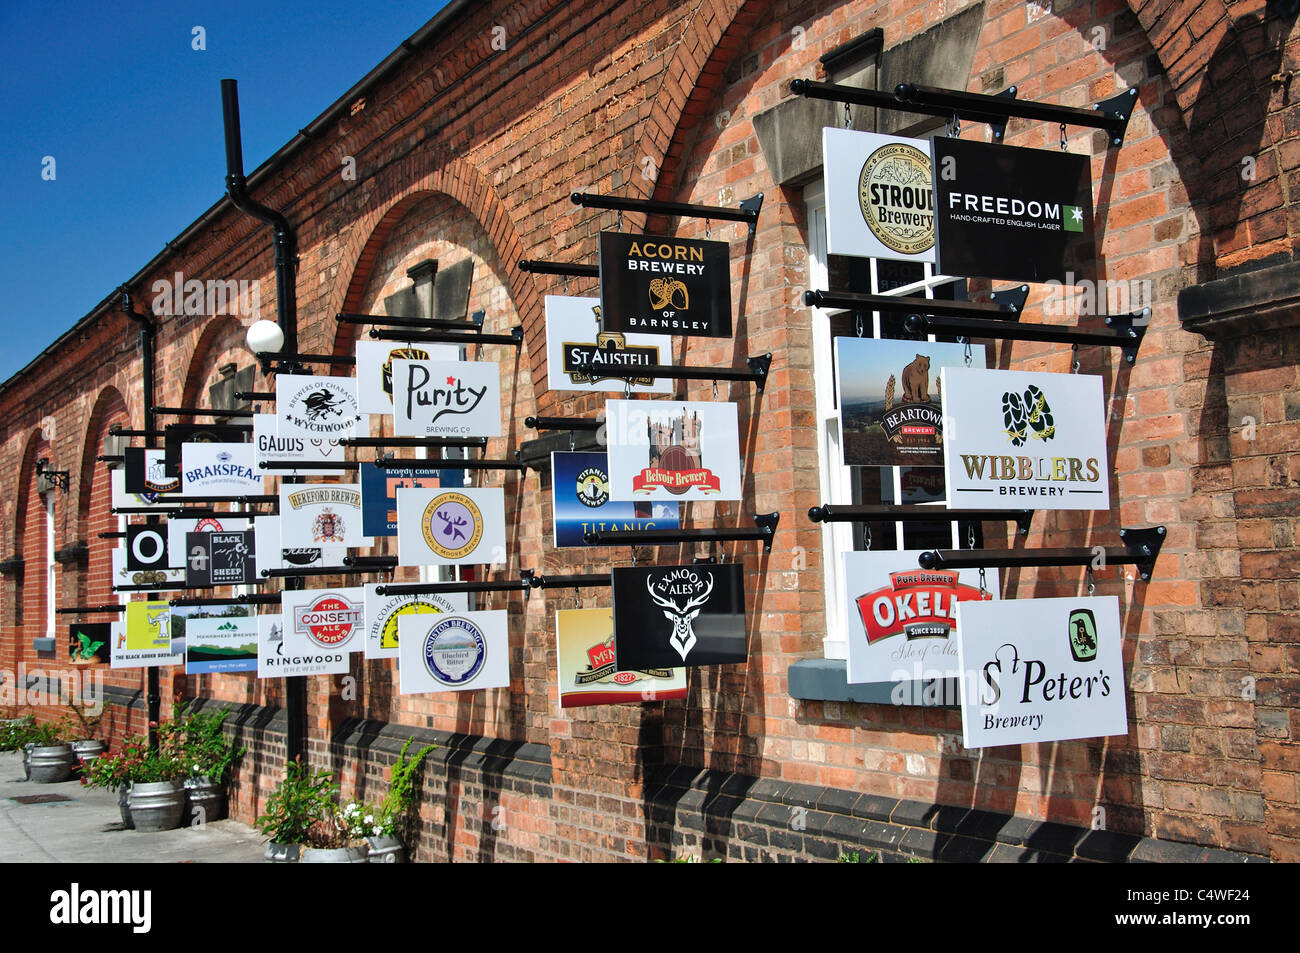 Signes de la brasserie sur le mur, la brasserie nationale Centre, Horninglow Street, Burton upon Trent, Staffordshire, Angleterre, Royaume-Uni Banque D'Images